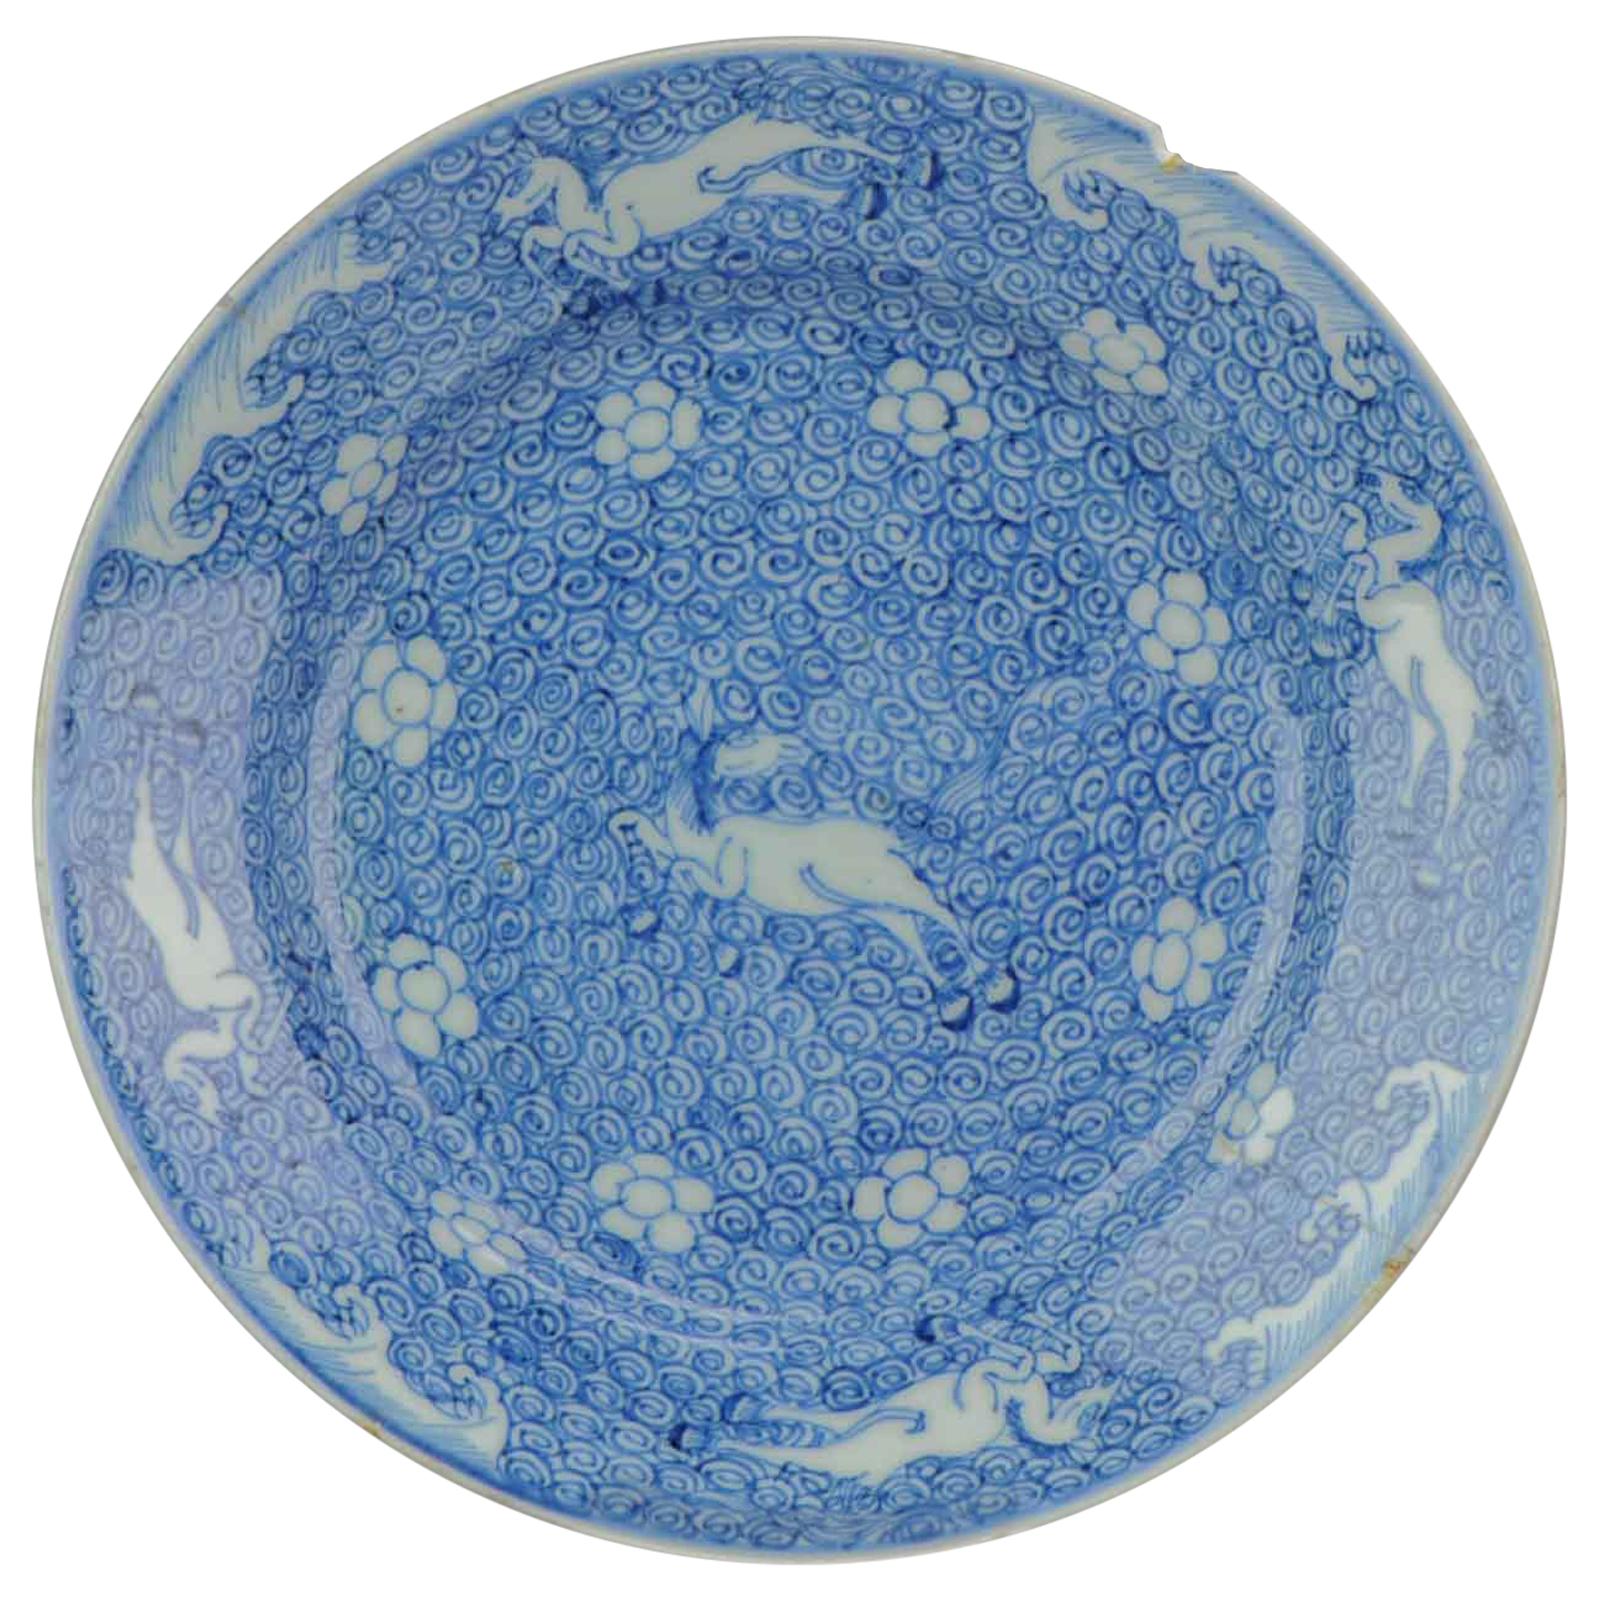 Rare et ancienne assiette en porcelaine chinoise Kangxi 16621722 représentant des chevaux de Galloping